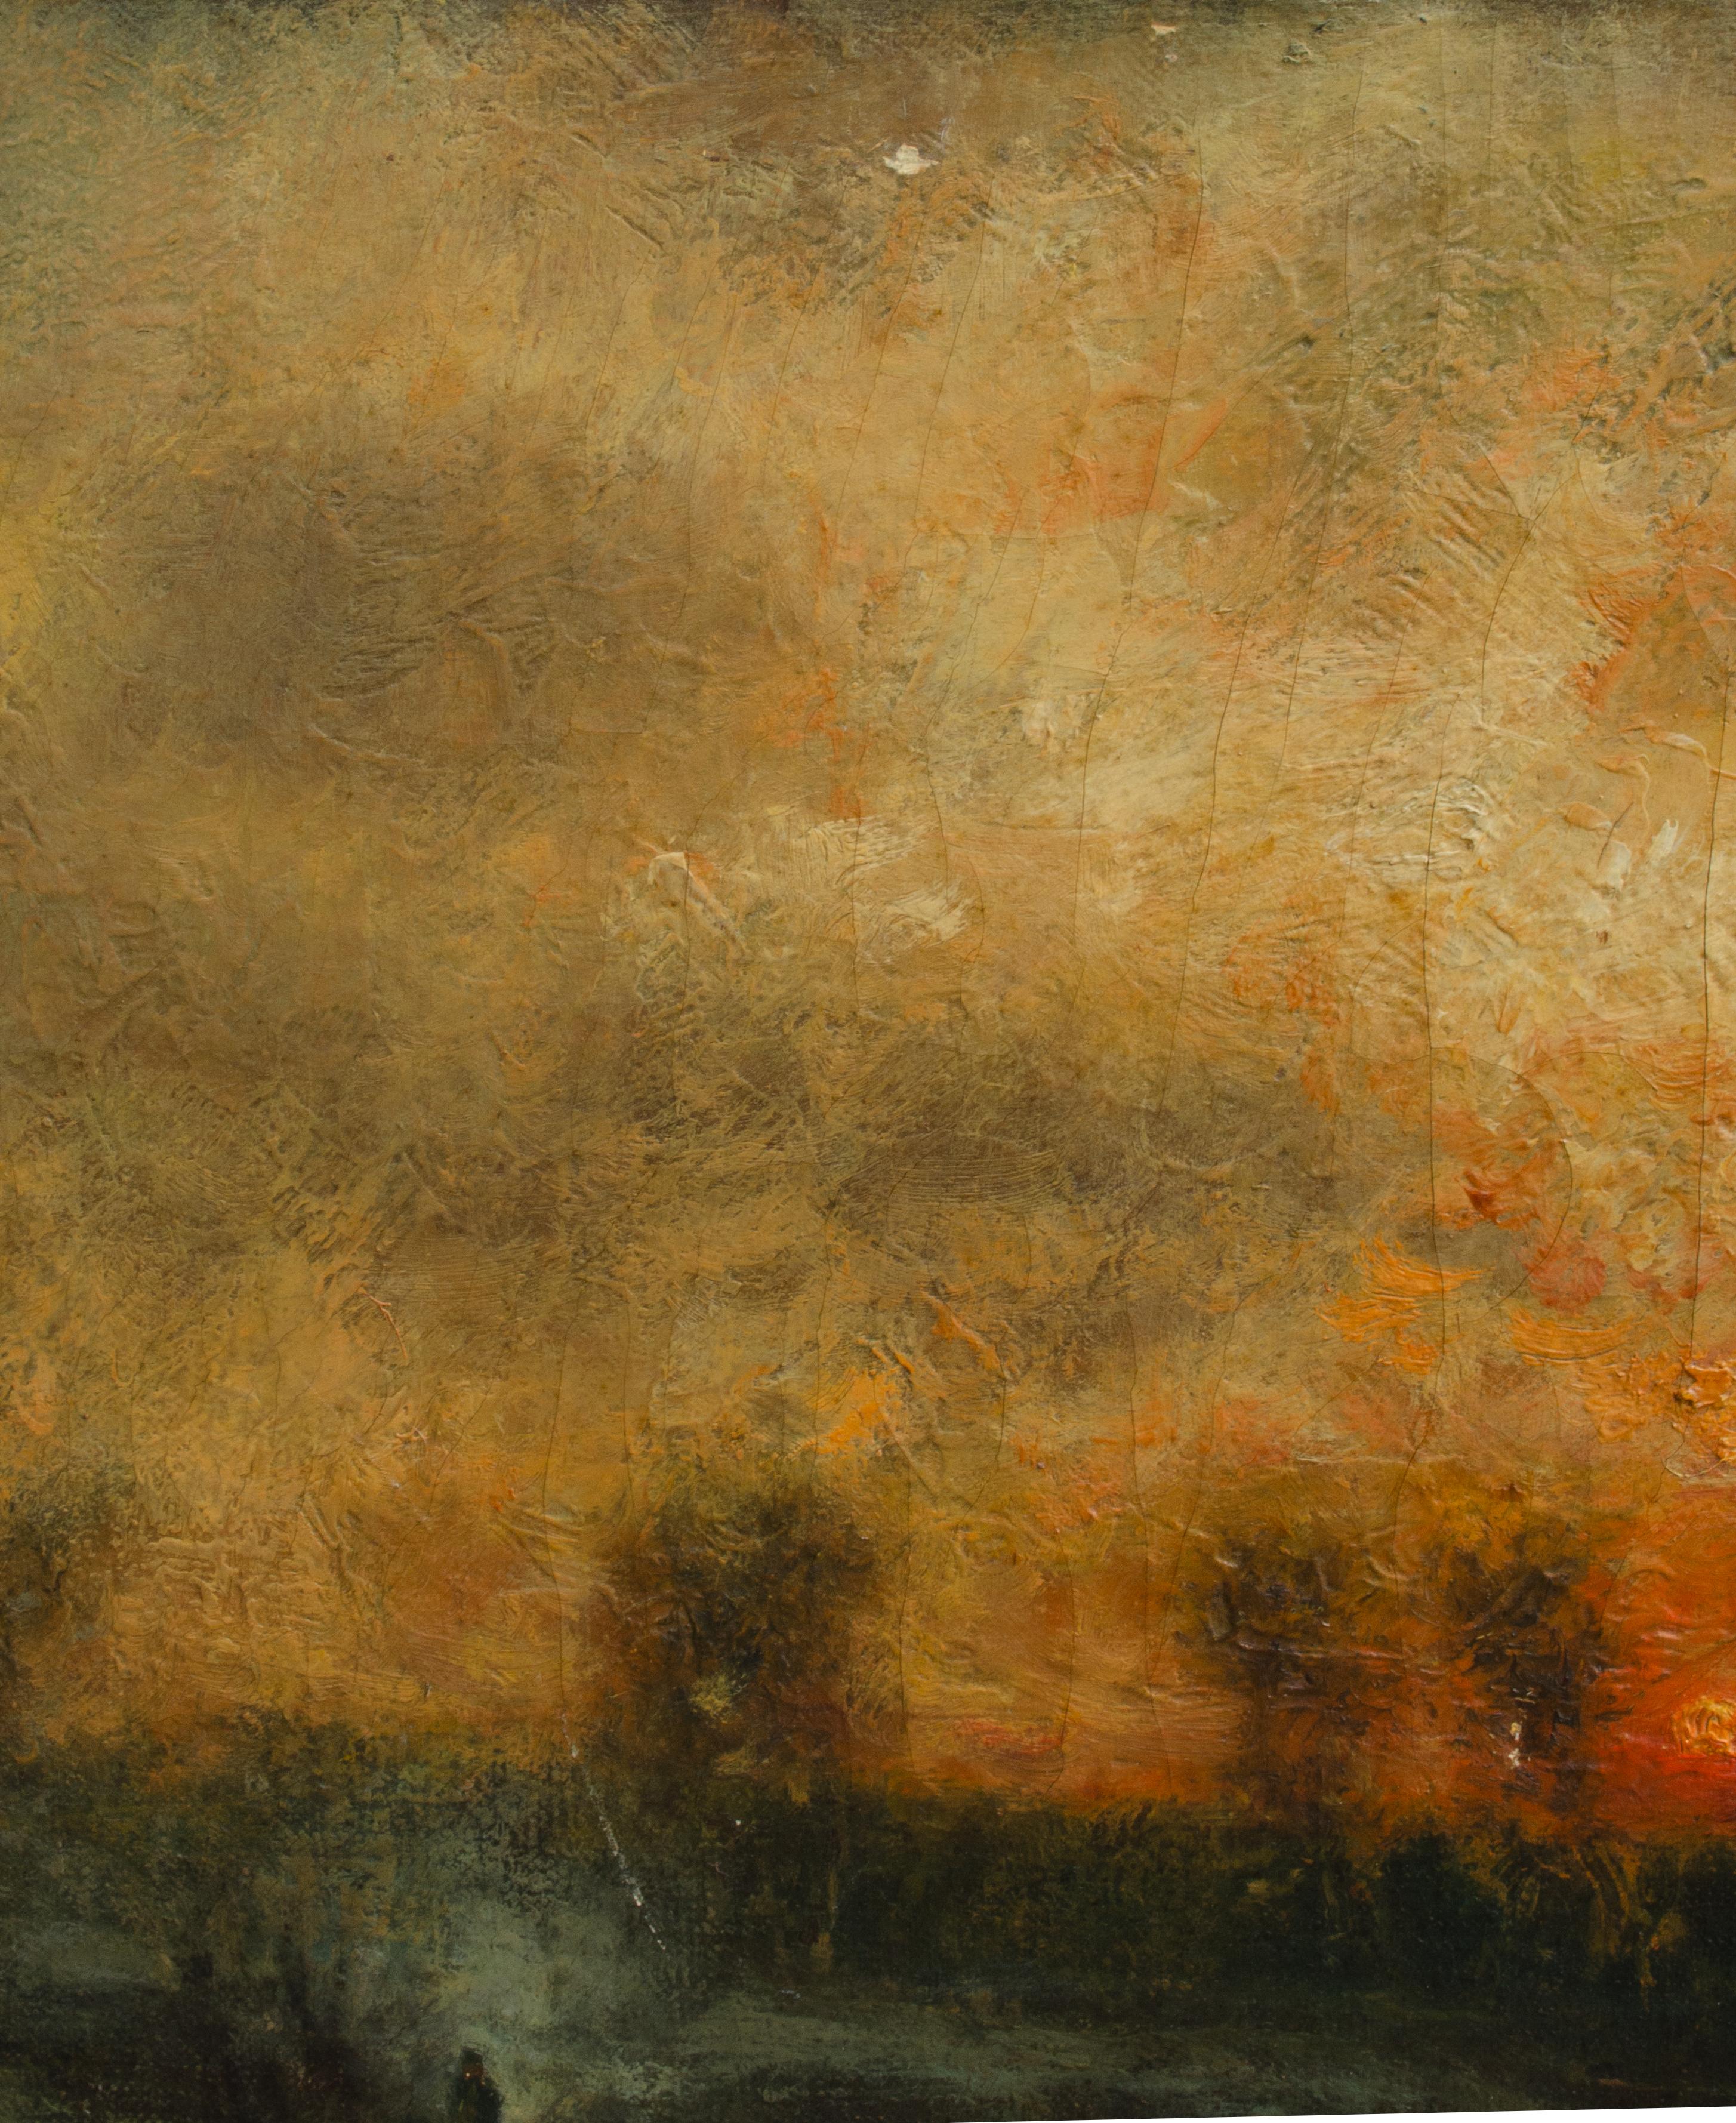 Charles Henry Miller (américain, 1842-1922)
Sans titre (lever de soleil à la ferme), c. 1885
Huile sur toile
13 x 24 in.
Signé en bas à droite : Chas. H. Miller, N.A.

Charles Henry Miller était un artiste renommé et un peintre de paysages de Long